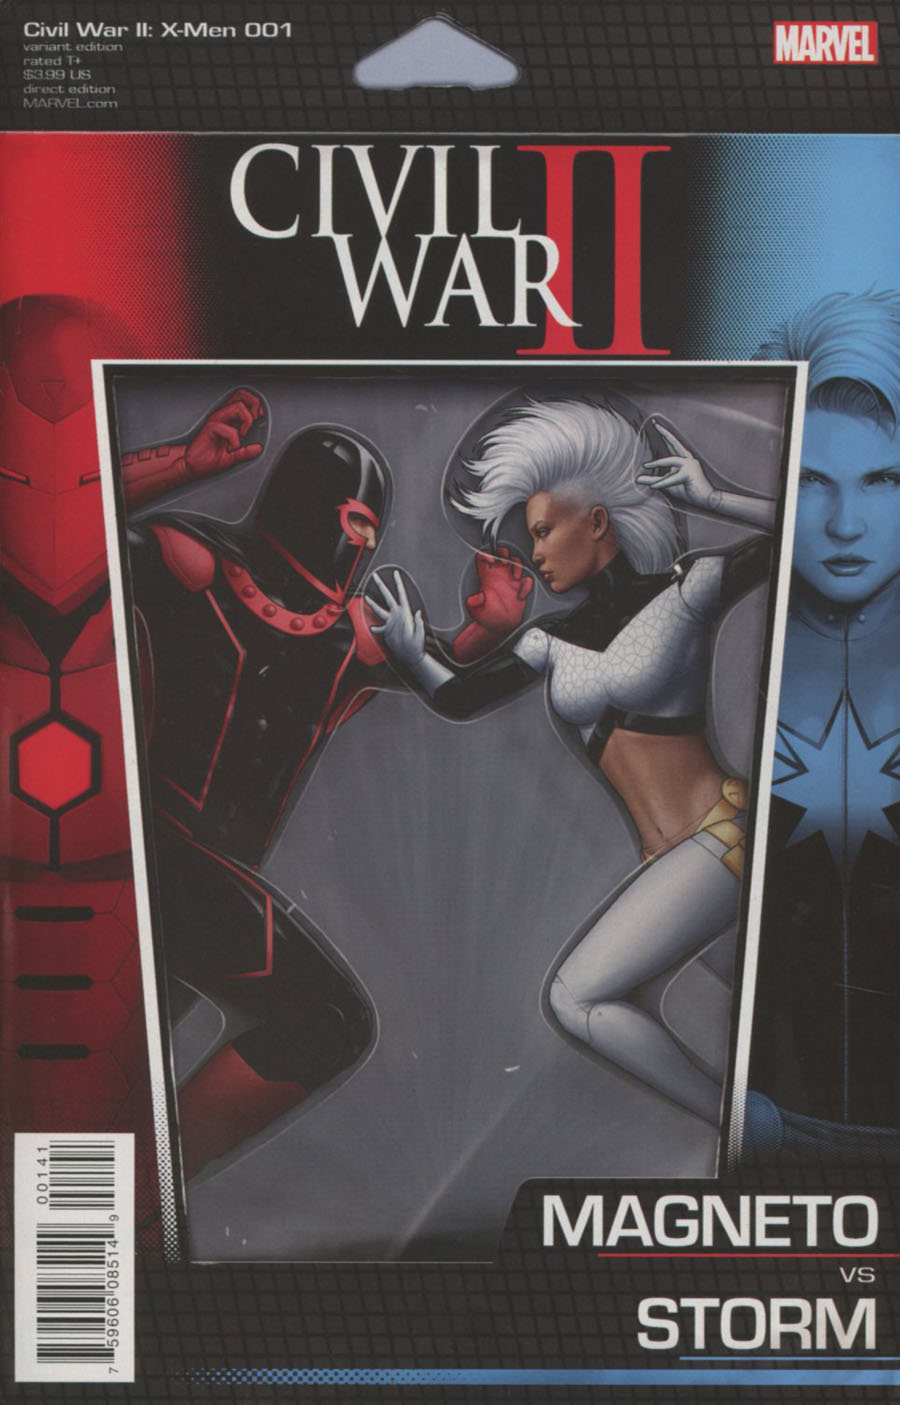 Civil War II X-Men #1 Cover C Variant John Tyler Christopher Action Figure Cover